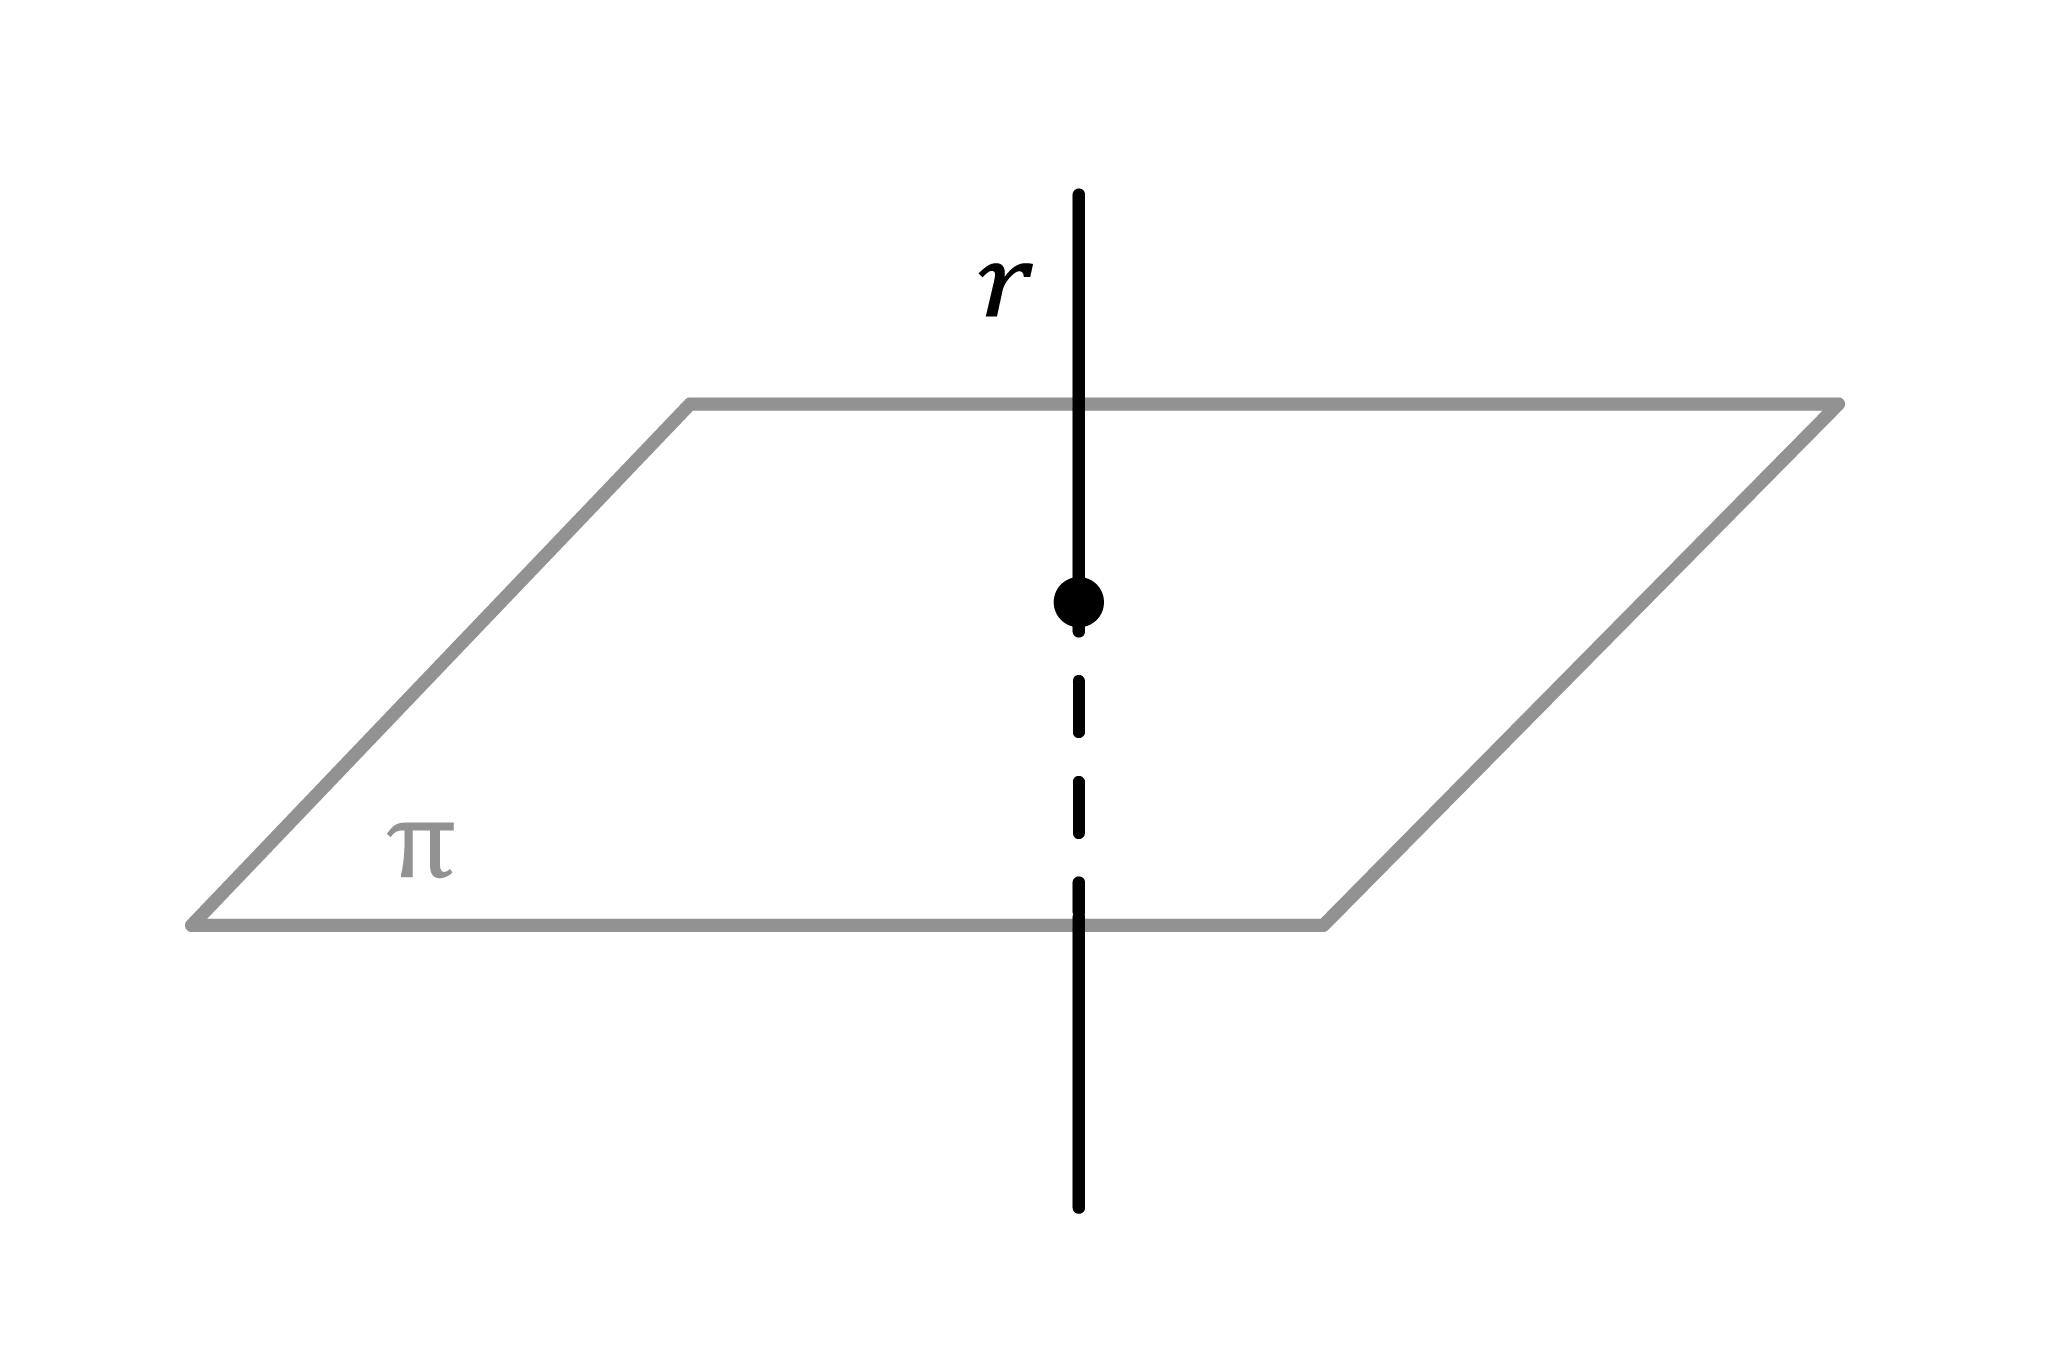 Matemáticas; Planos; 2. Bachillerato; Posición relativa entre recta y plano en el espacio